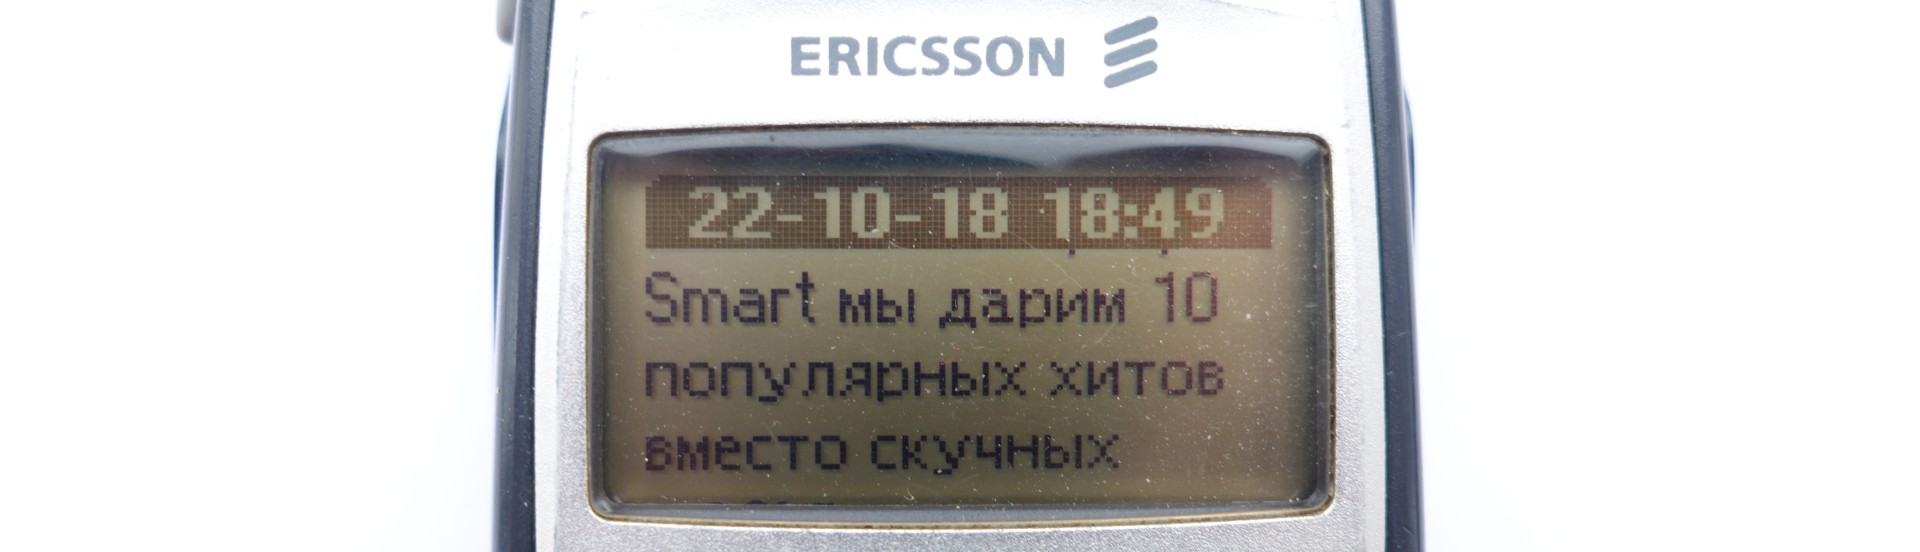 Древности: Ericsson T39 и ранний мобильный интернет - 13